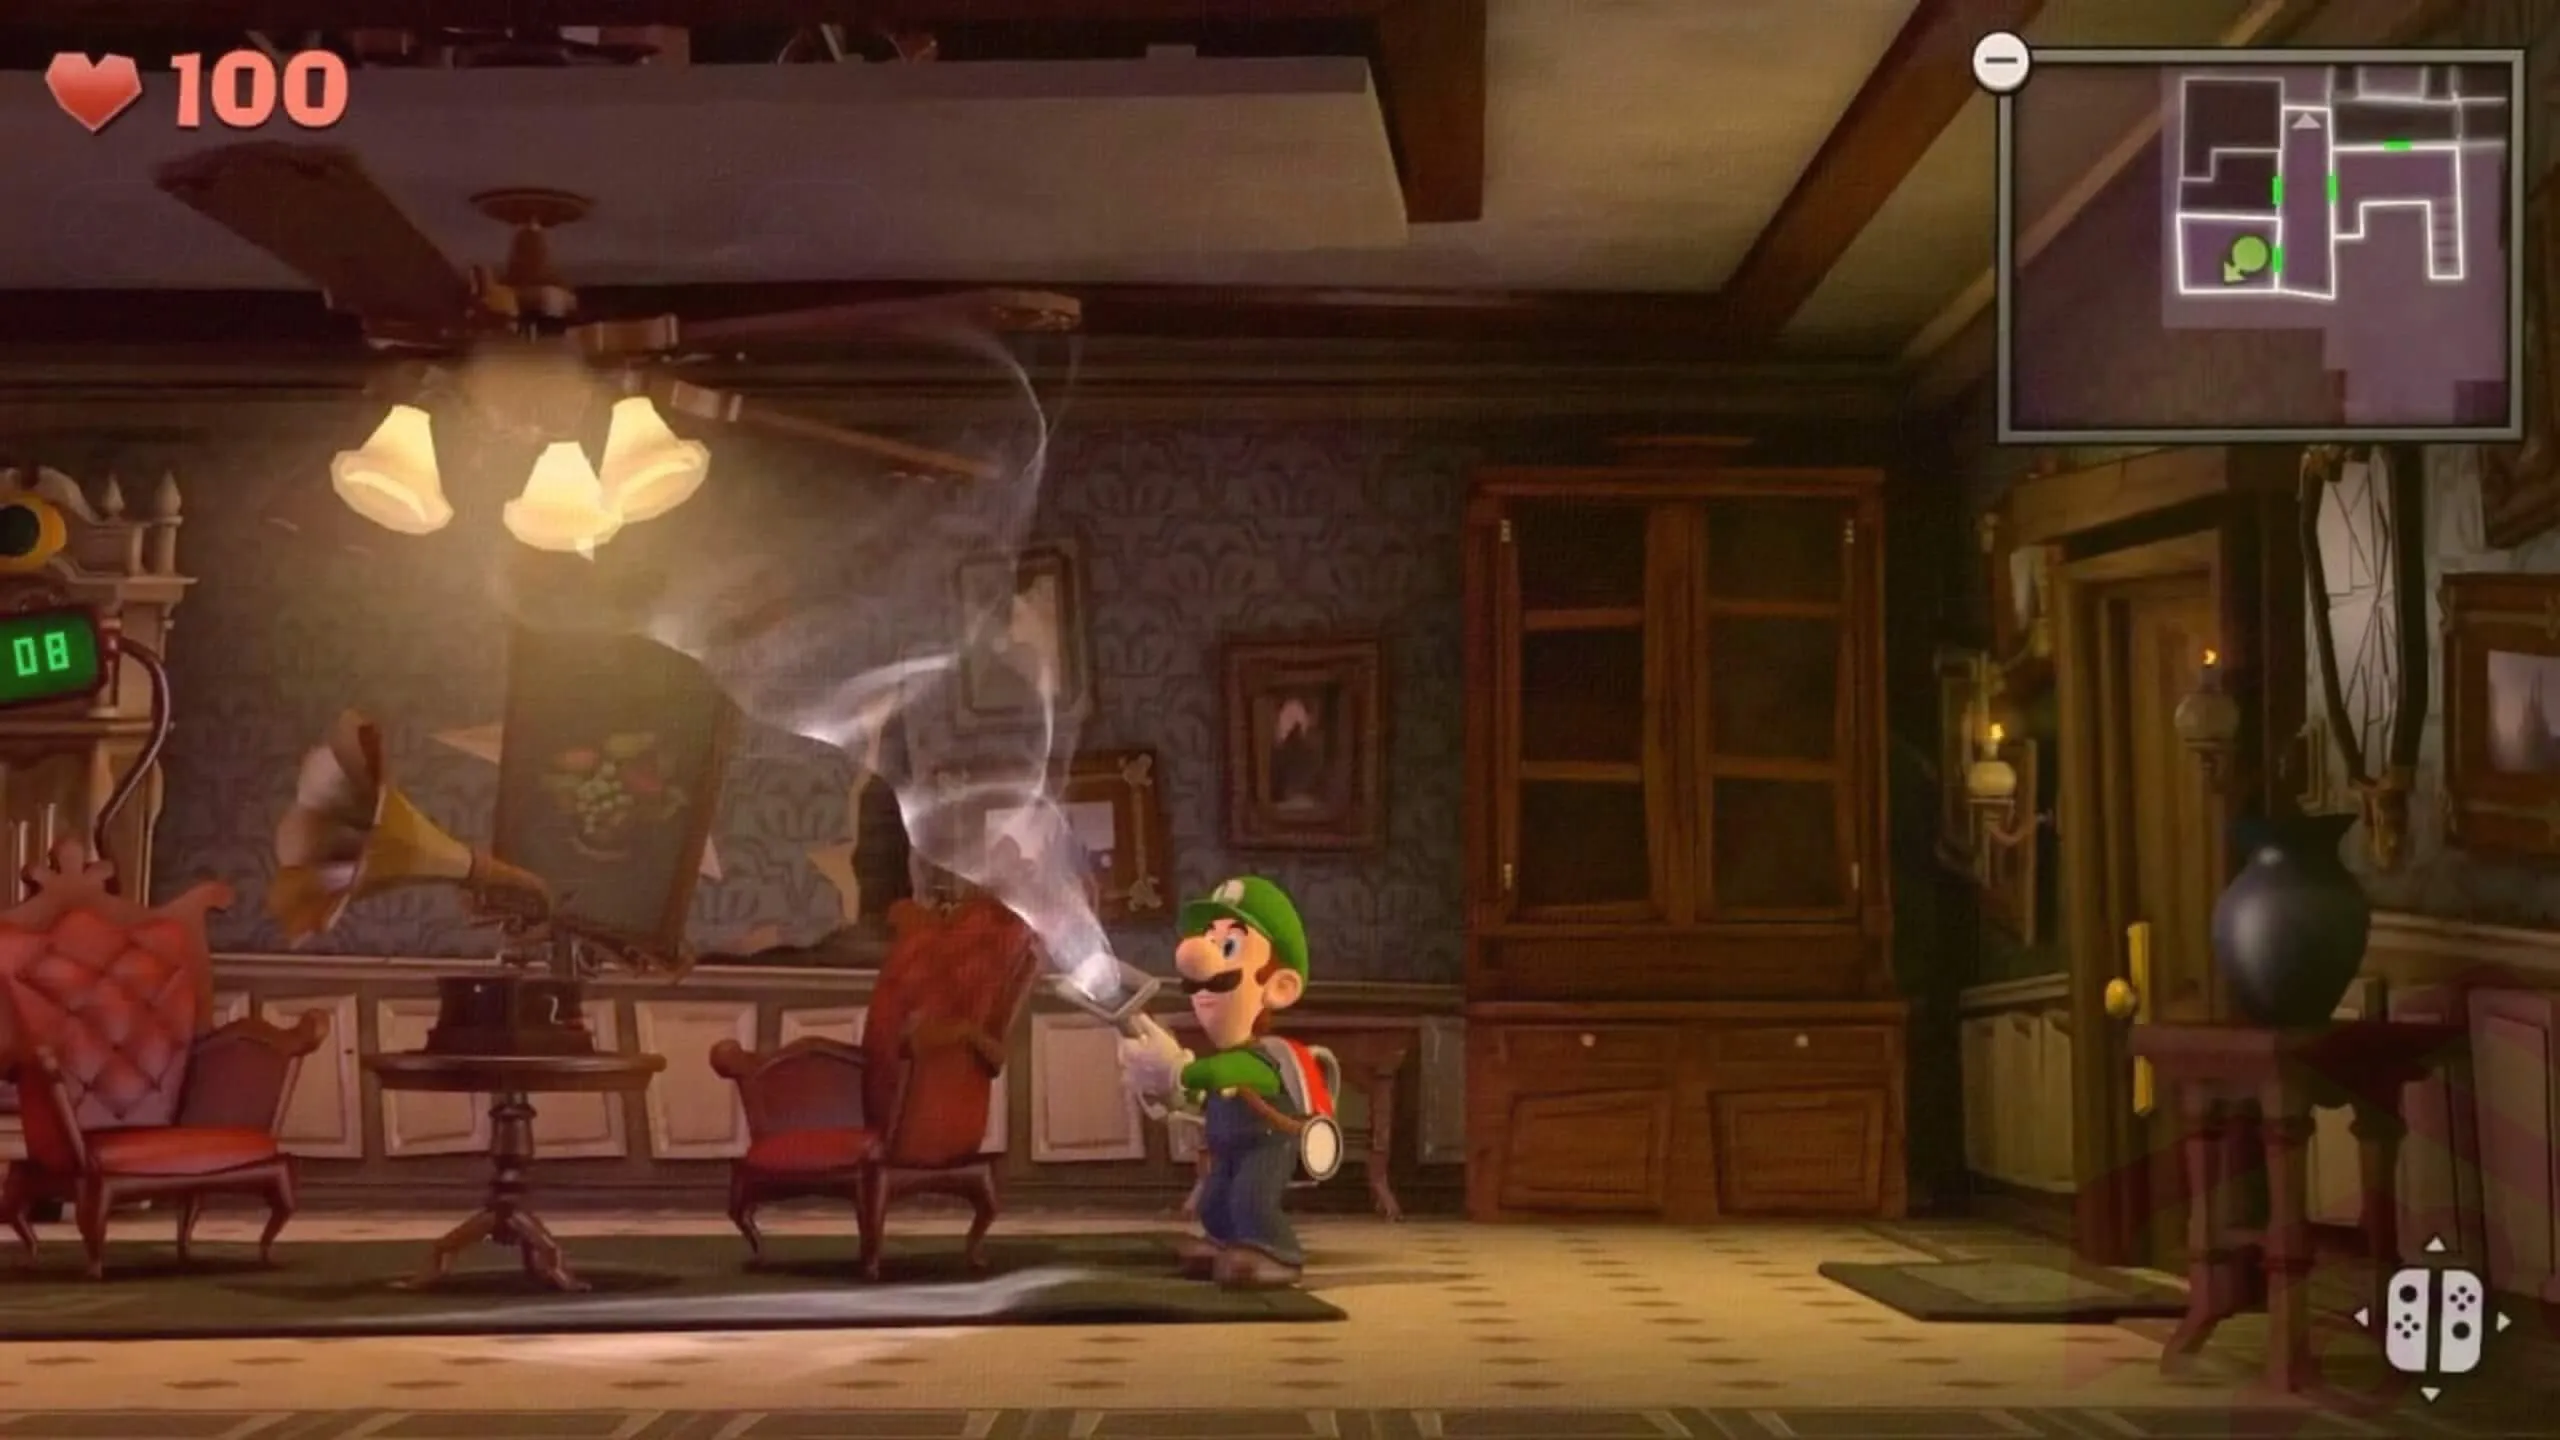 Luigis mansion 2 screenshot